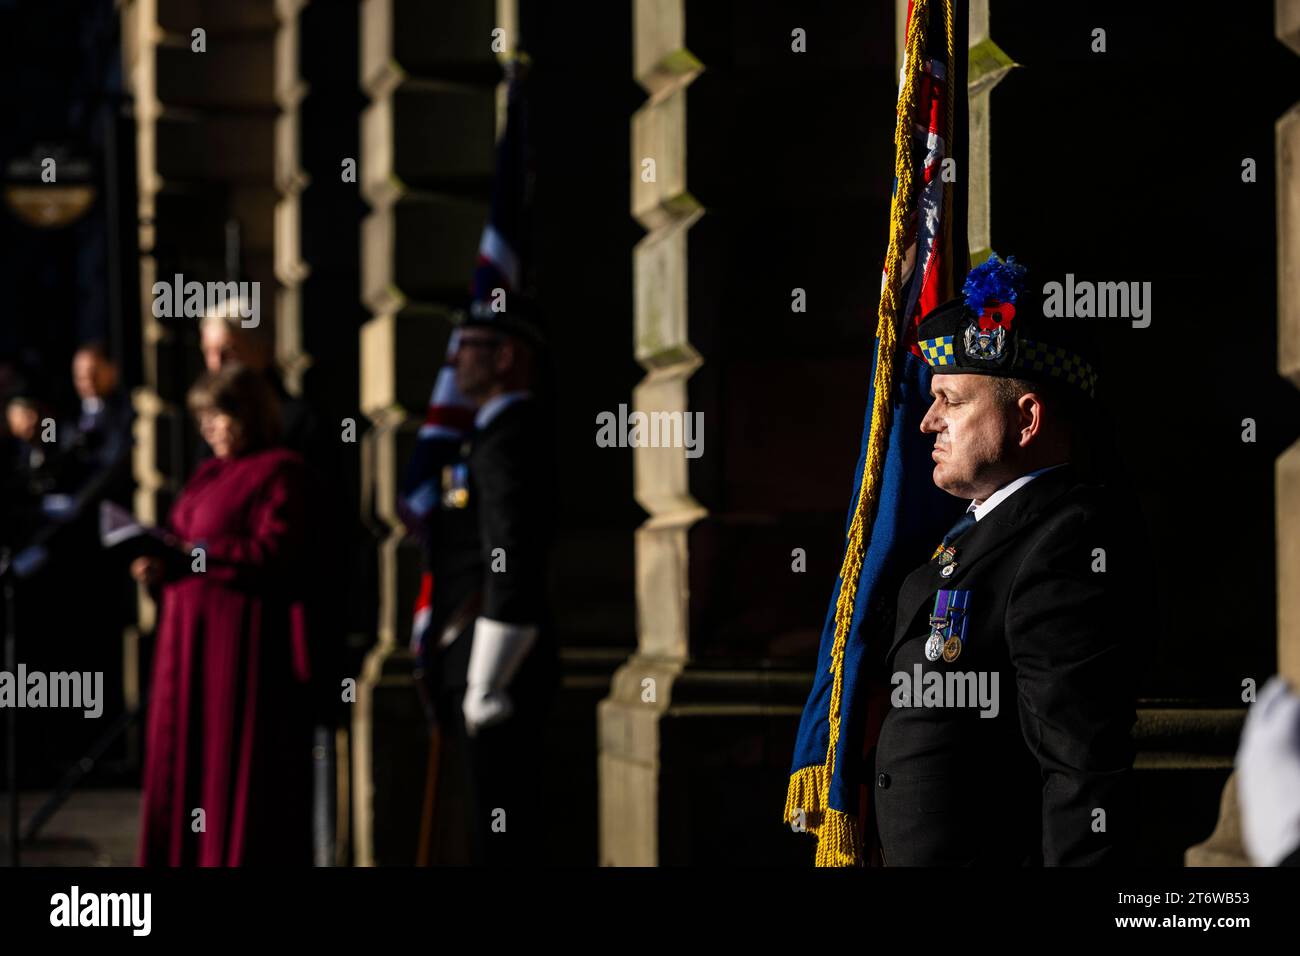 Atmosphäre während der Gedenkfeier am Sonntag in Edinburgh City Chambers auf der Royal Mile in Edinburgh. Quelle: Euan Cherry Stockfoto